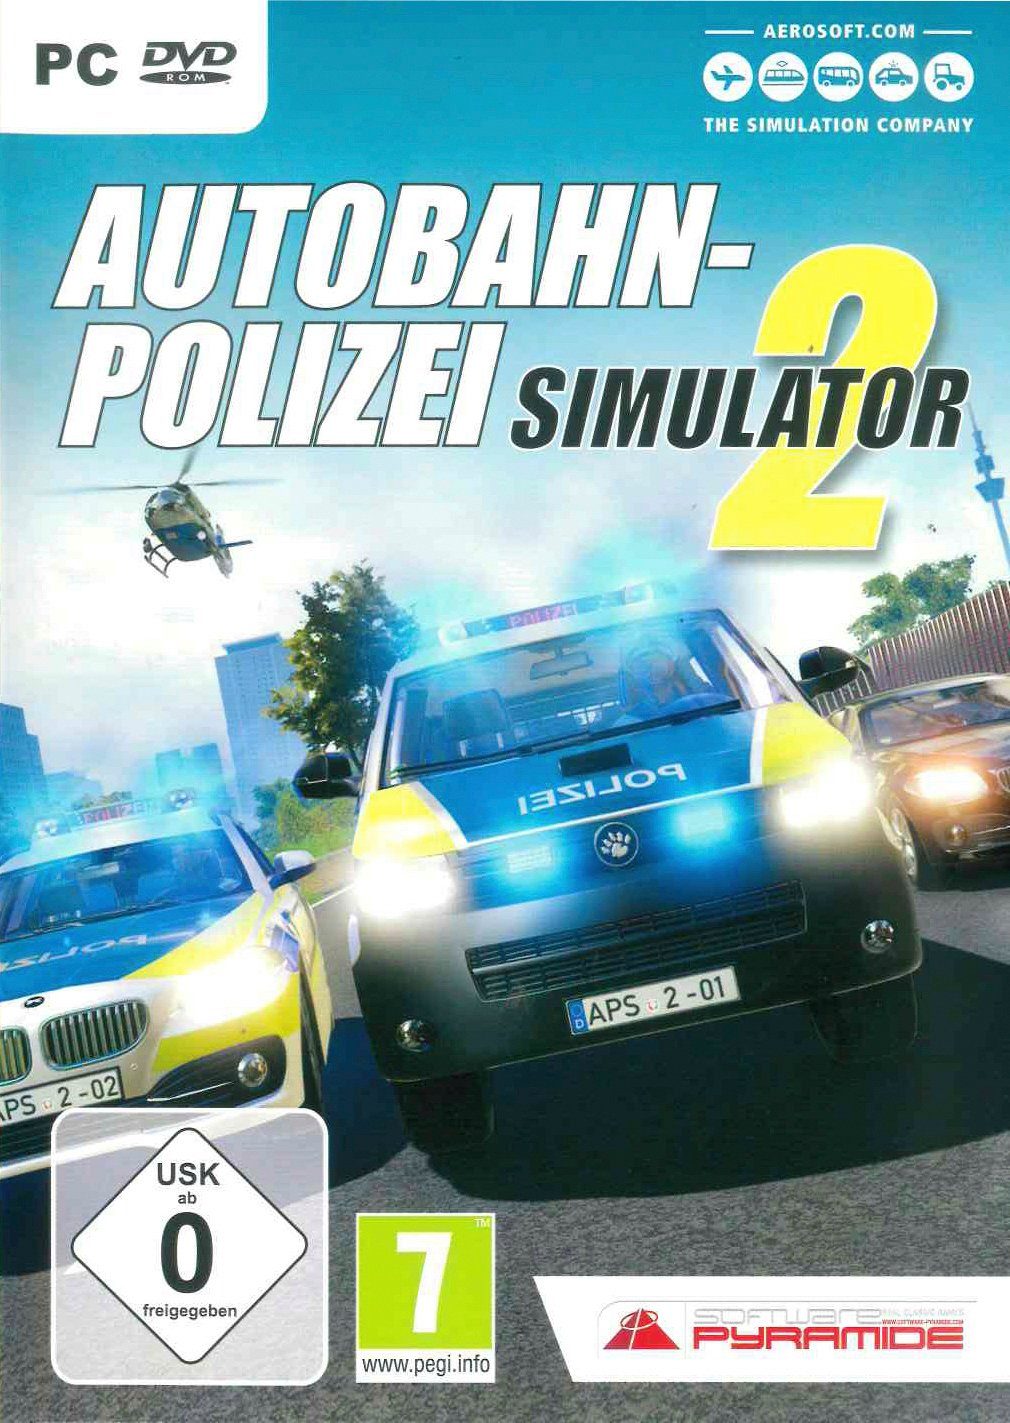 Simulator 2 PC Autobahn-Polizei